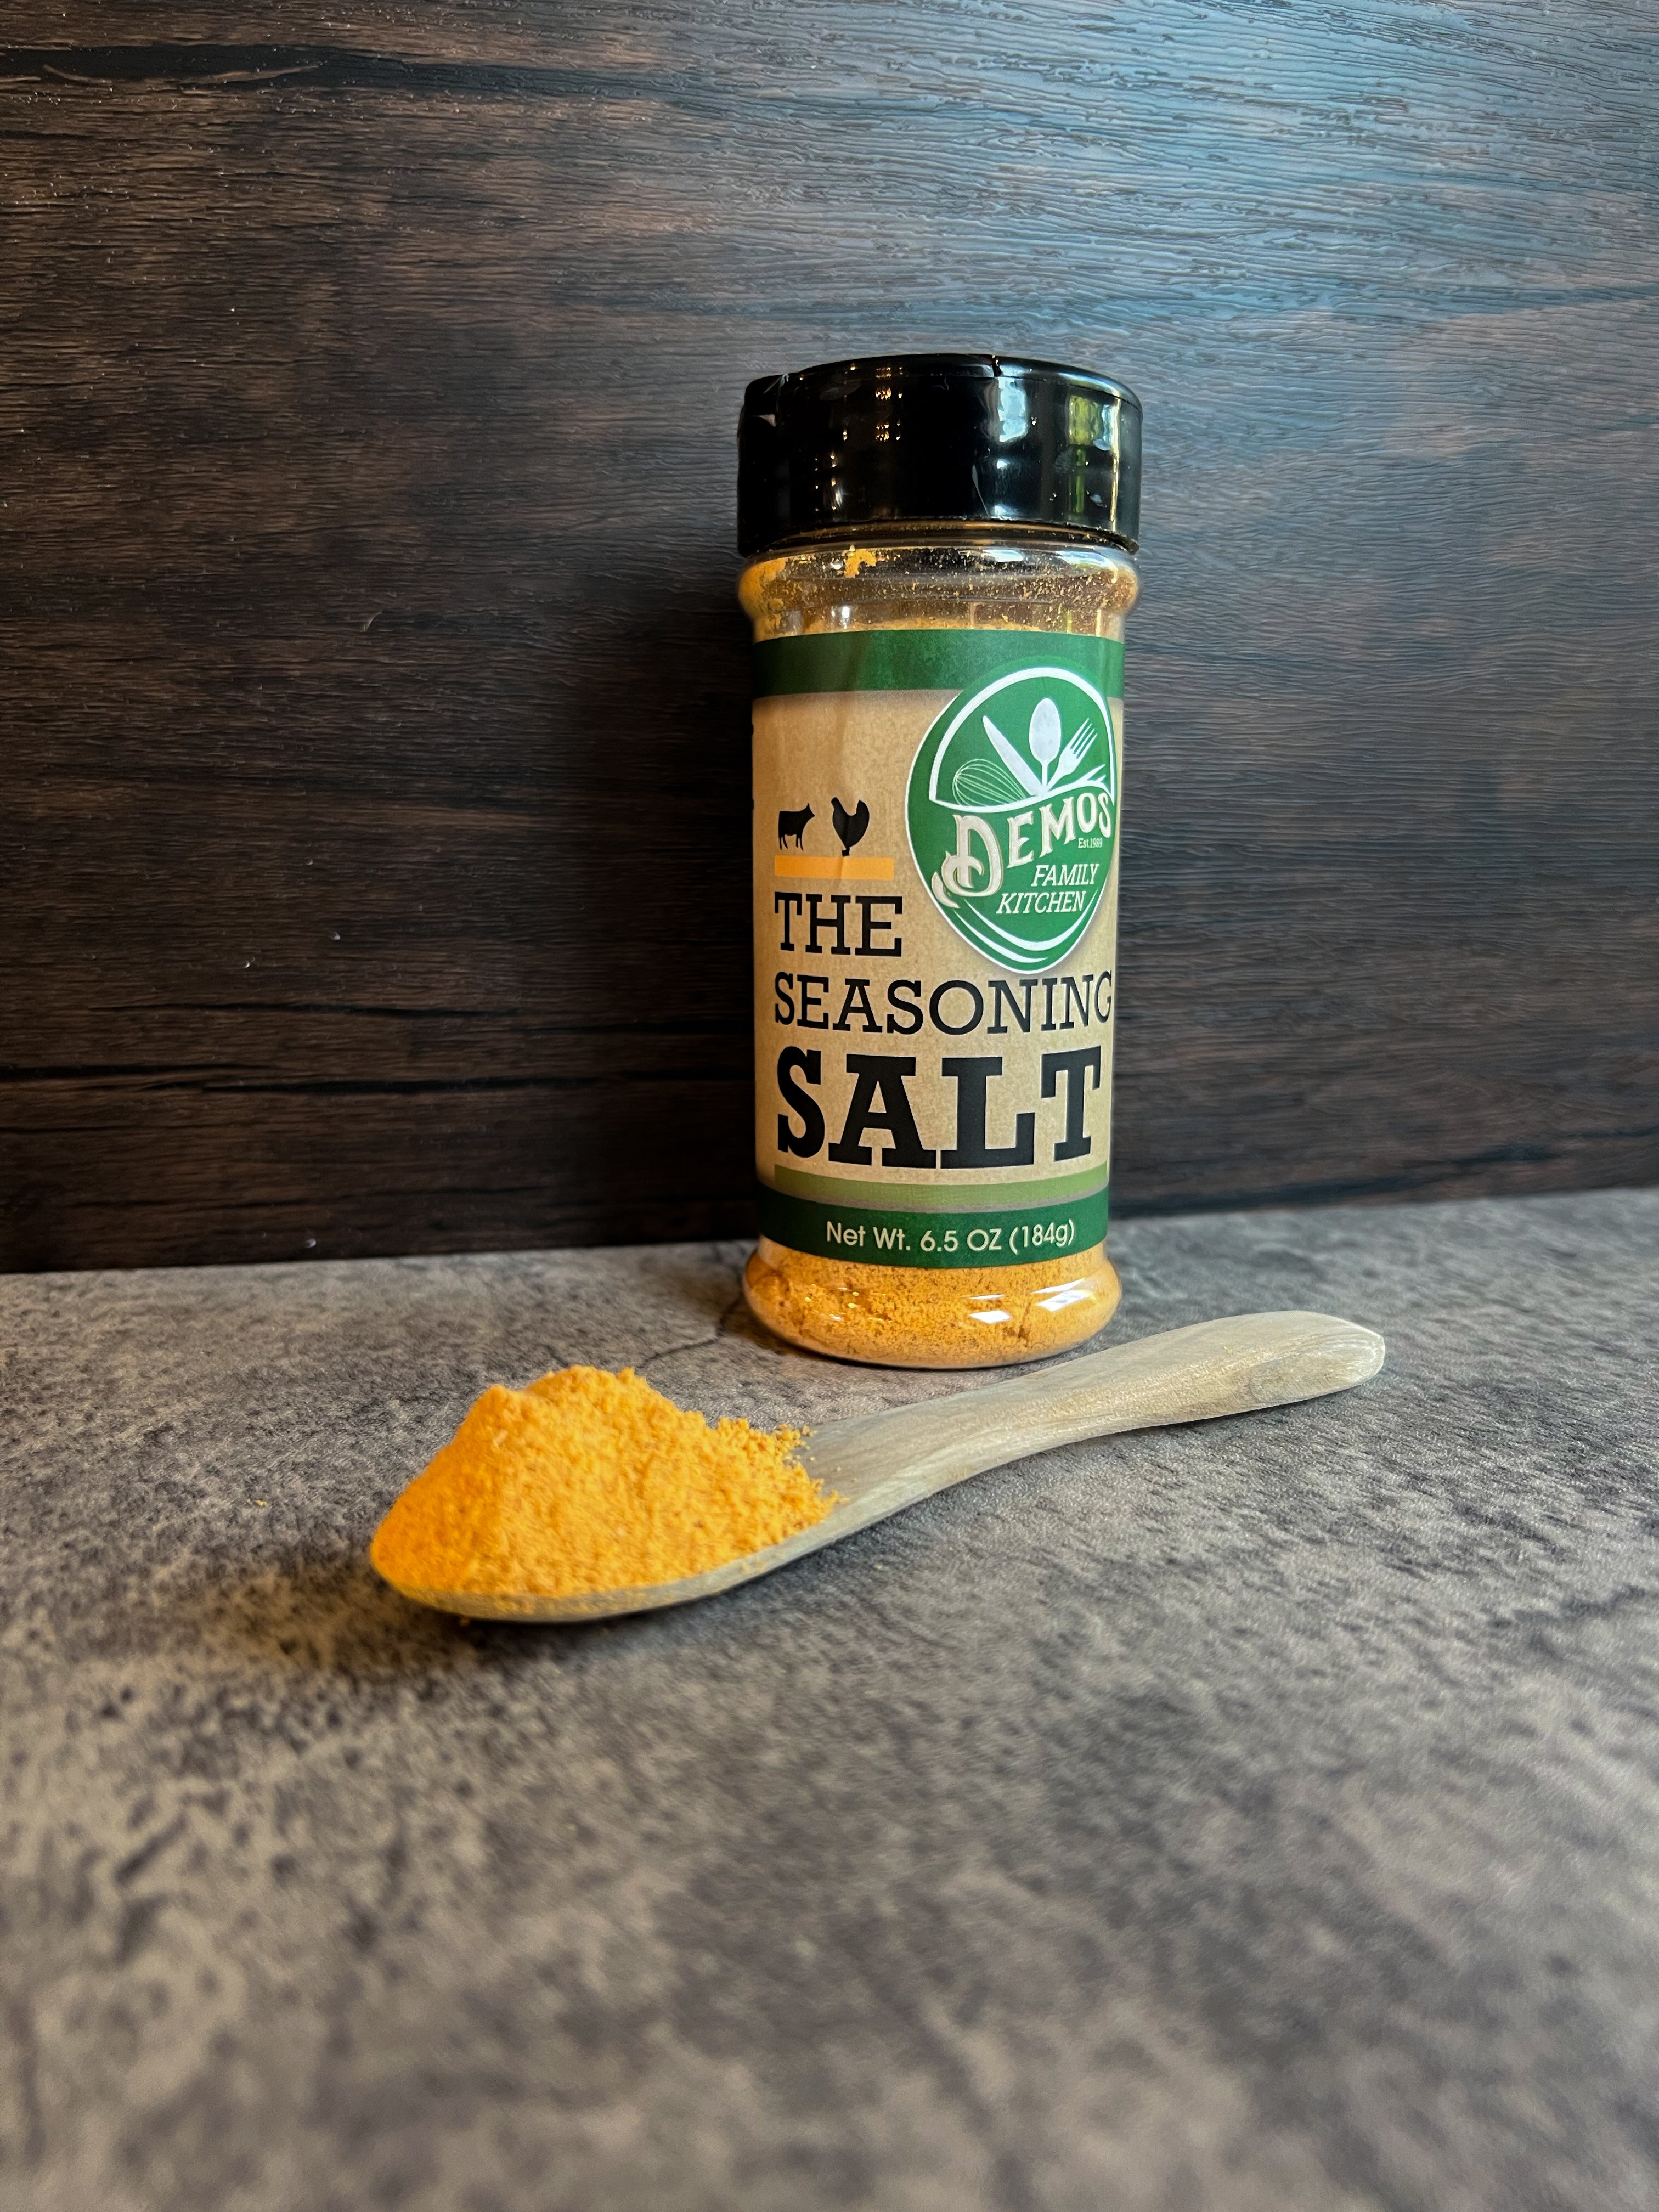 The Seasoning Salt